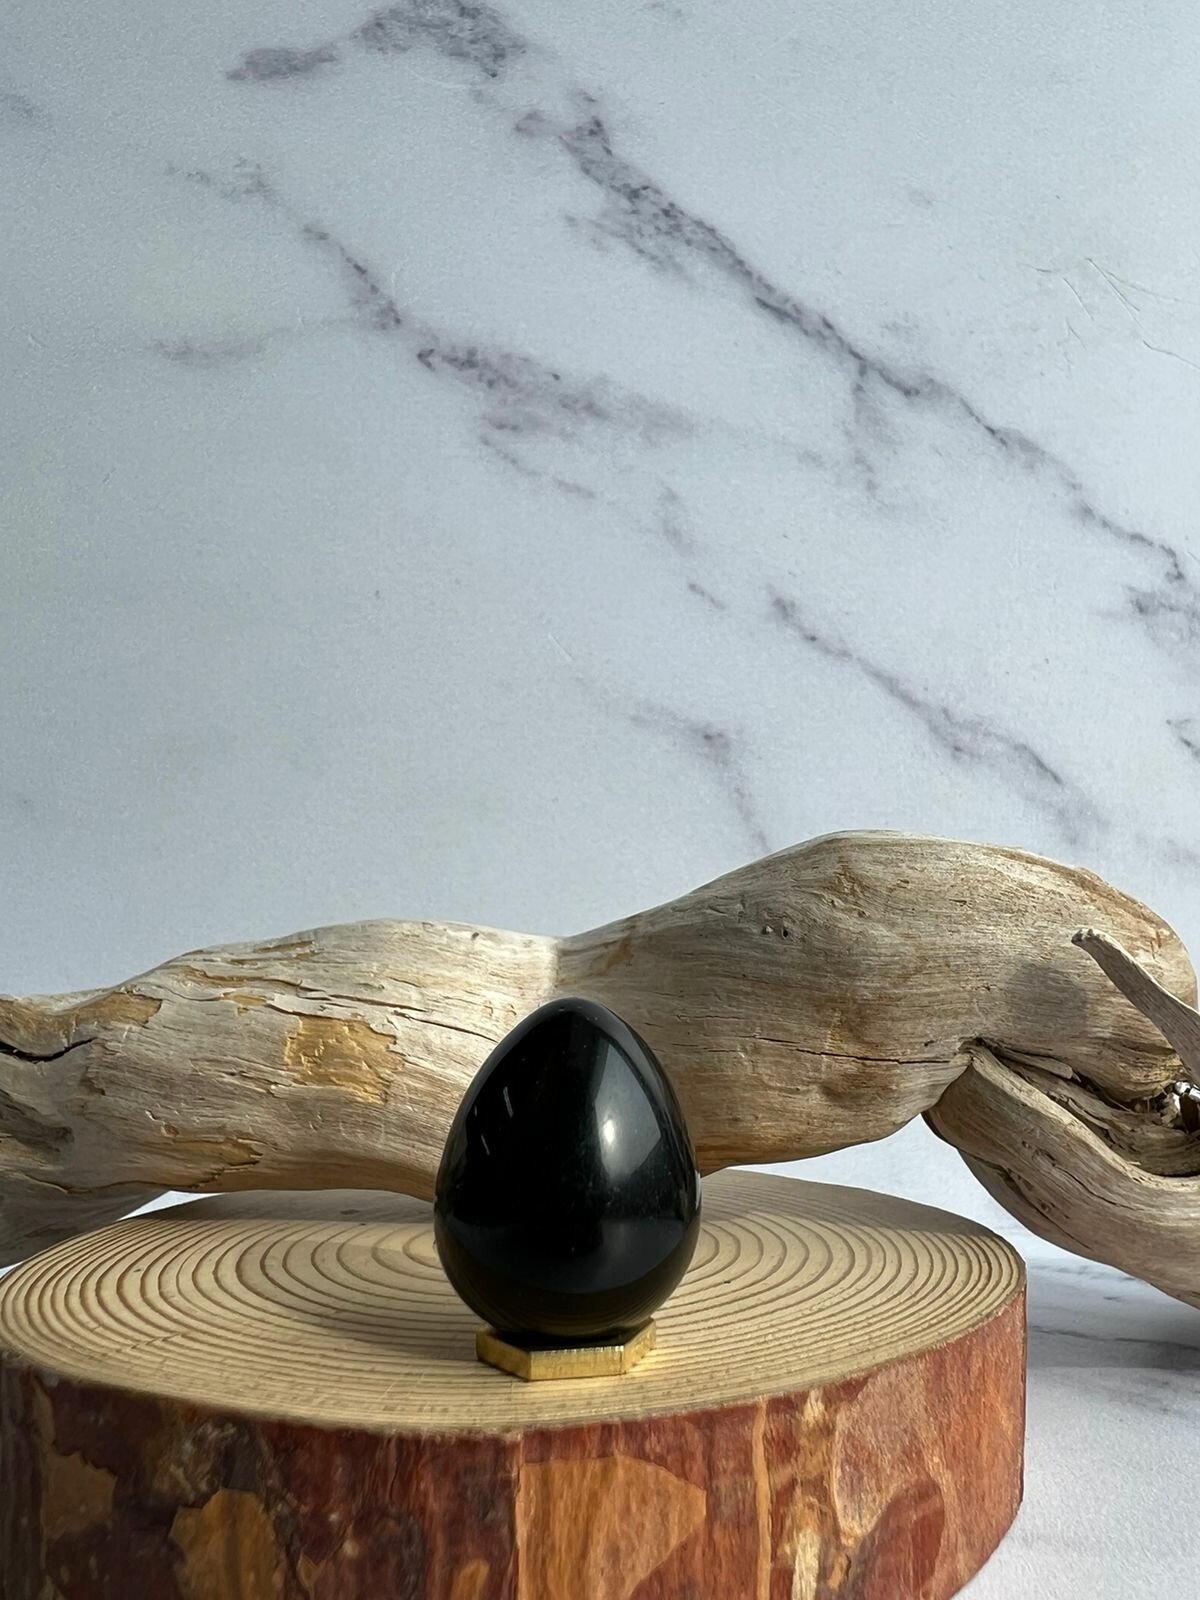 Сувенир на Пасху "Яйцо" из натурального камня Обсидиан черный, 22х18 мм.